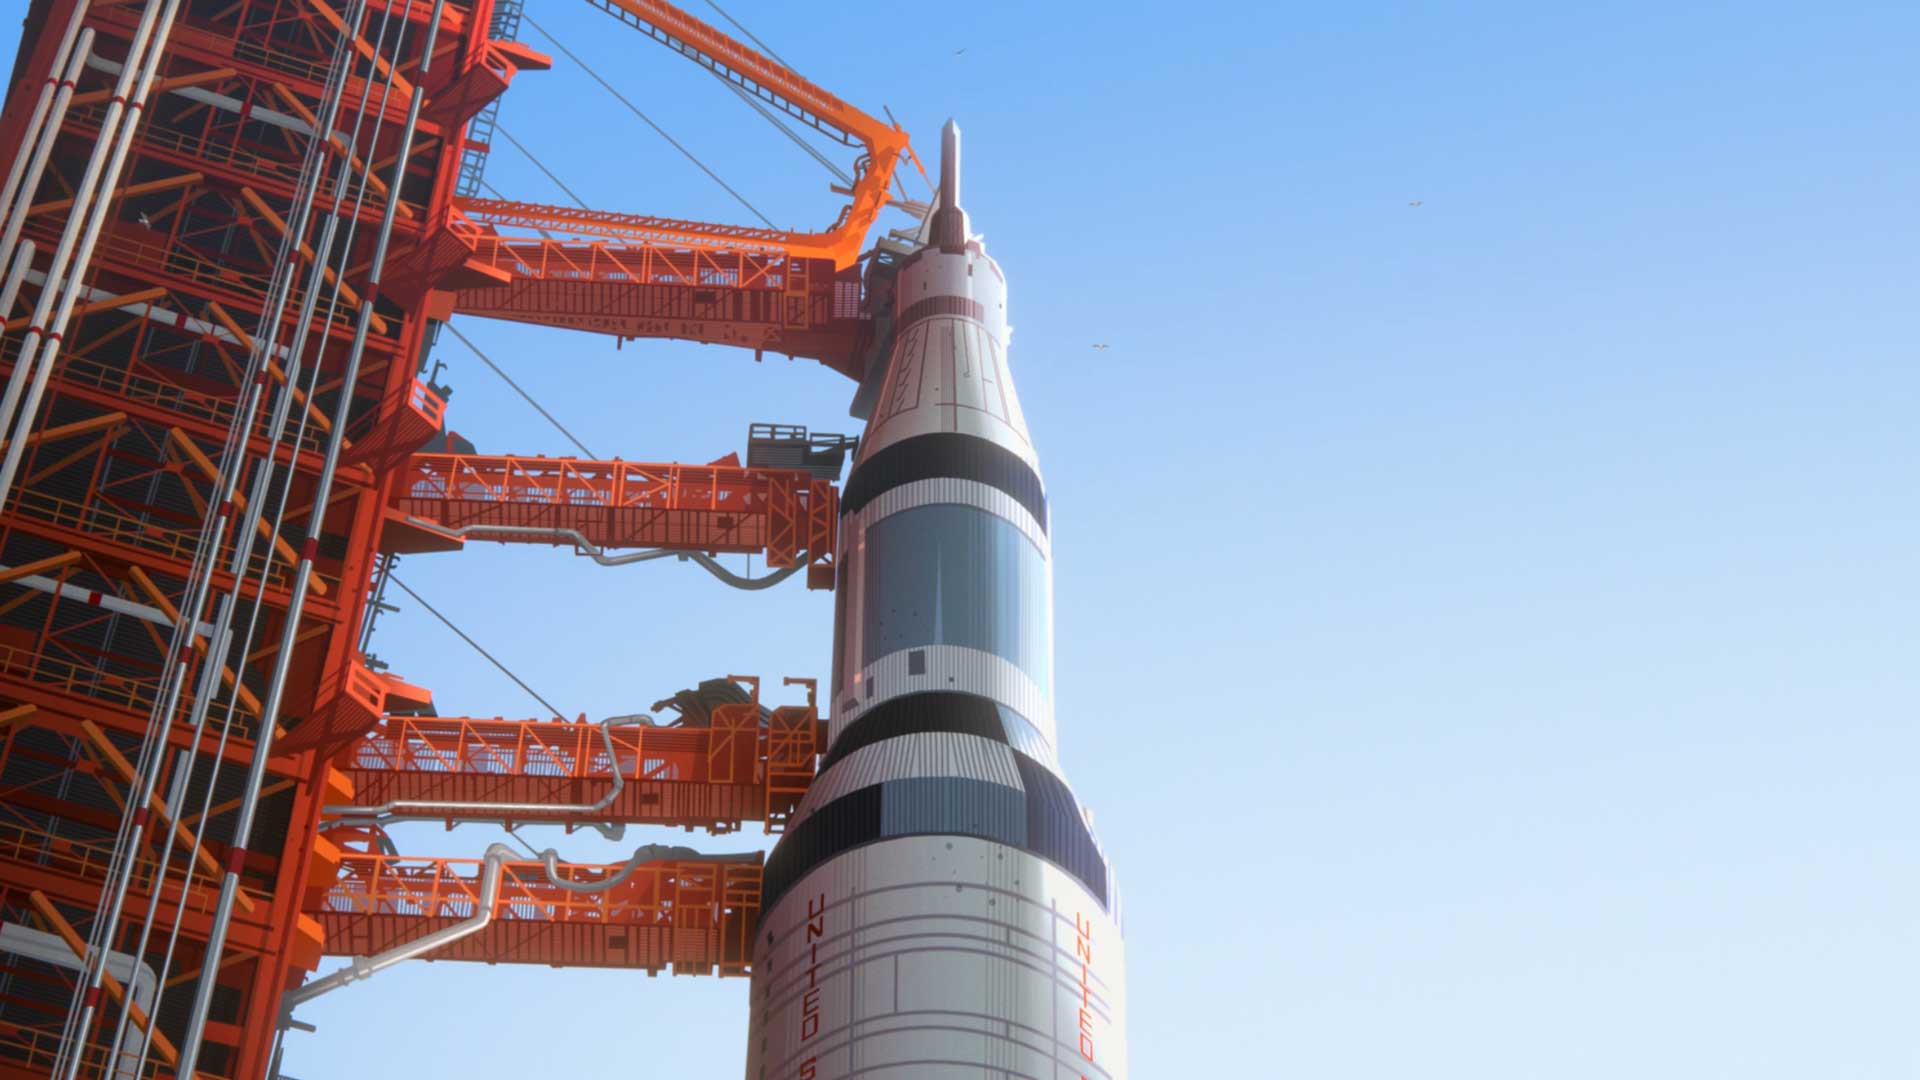 ناسا در حال آماده سازی راکت برای پرتاب به فضا در انیمیشن Apollo 10½: A Space Age Childhood ریچارد لینک لیتر در شبکه آنلاین نتفلیکس